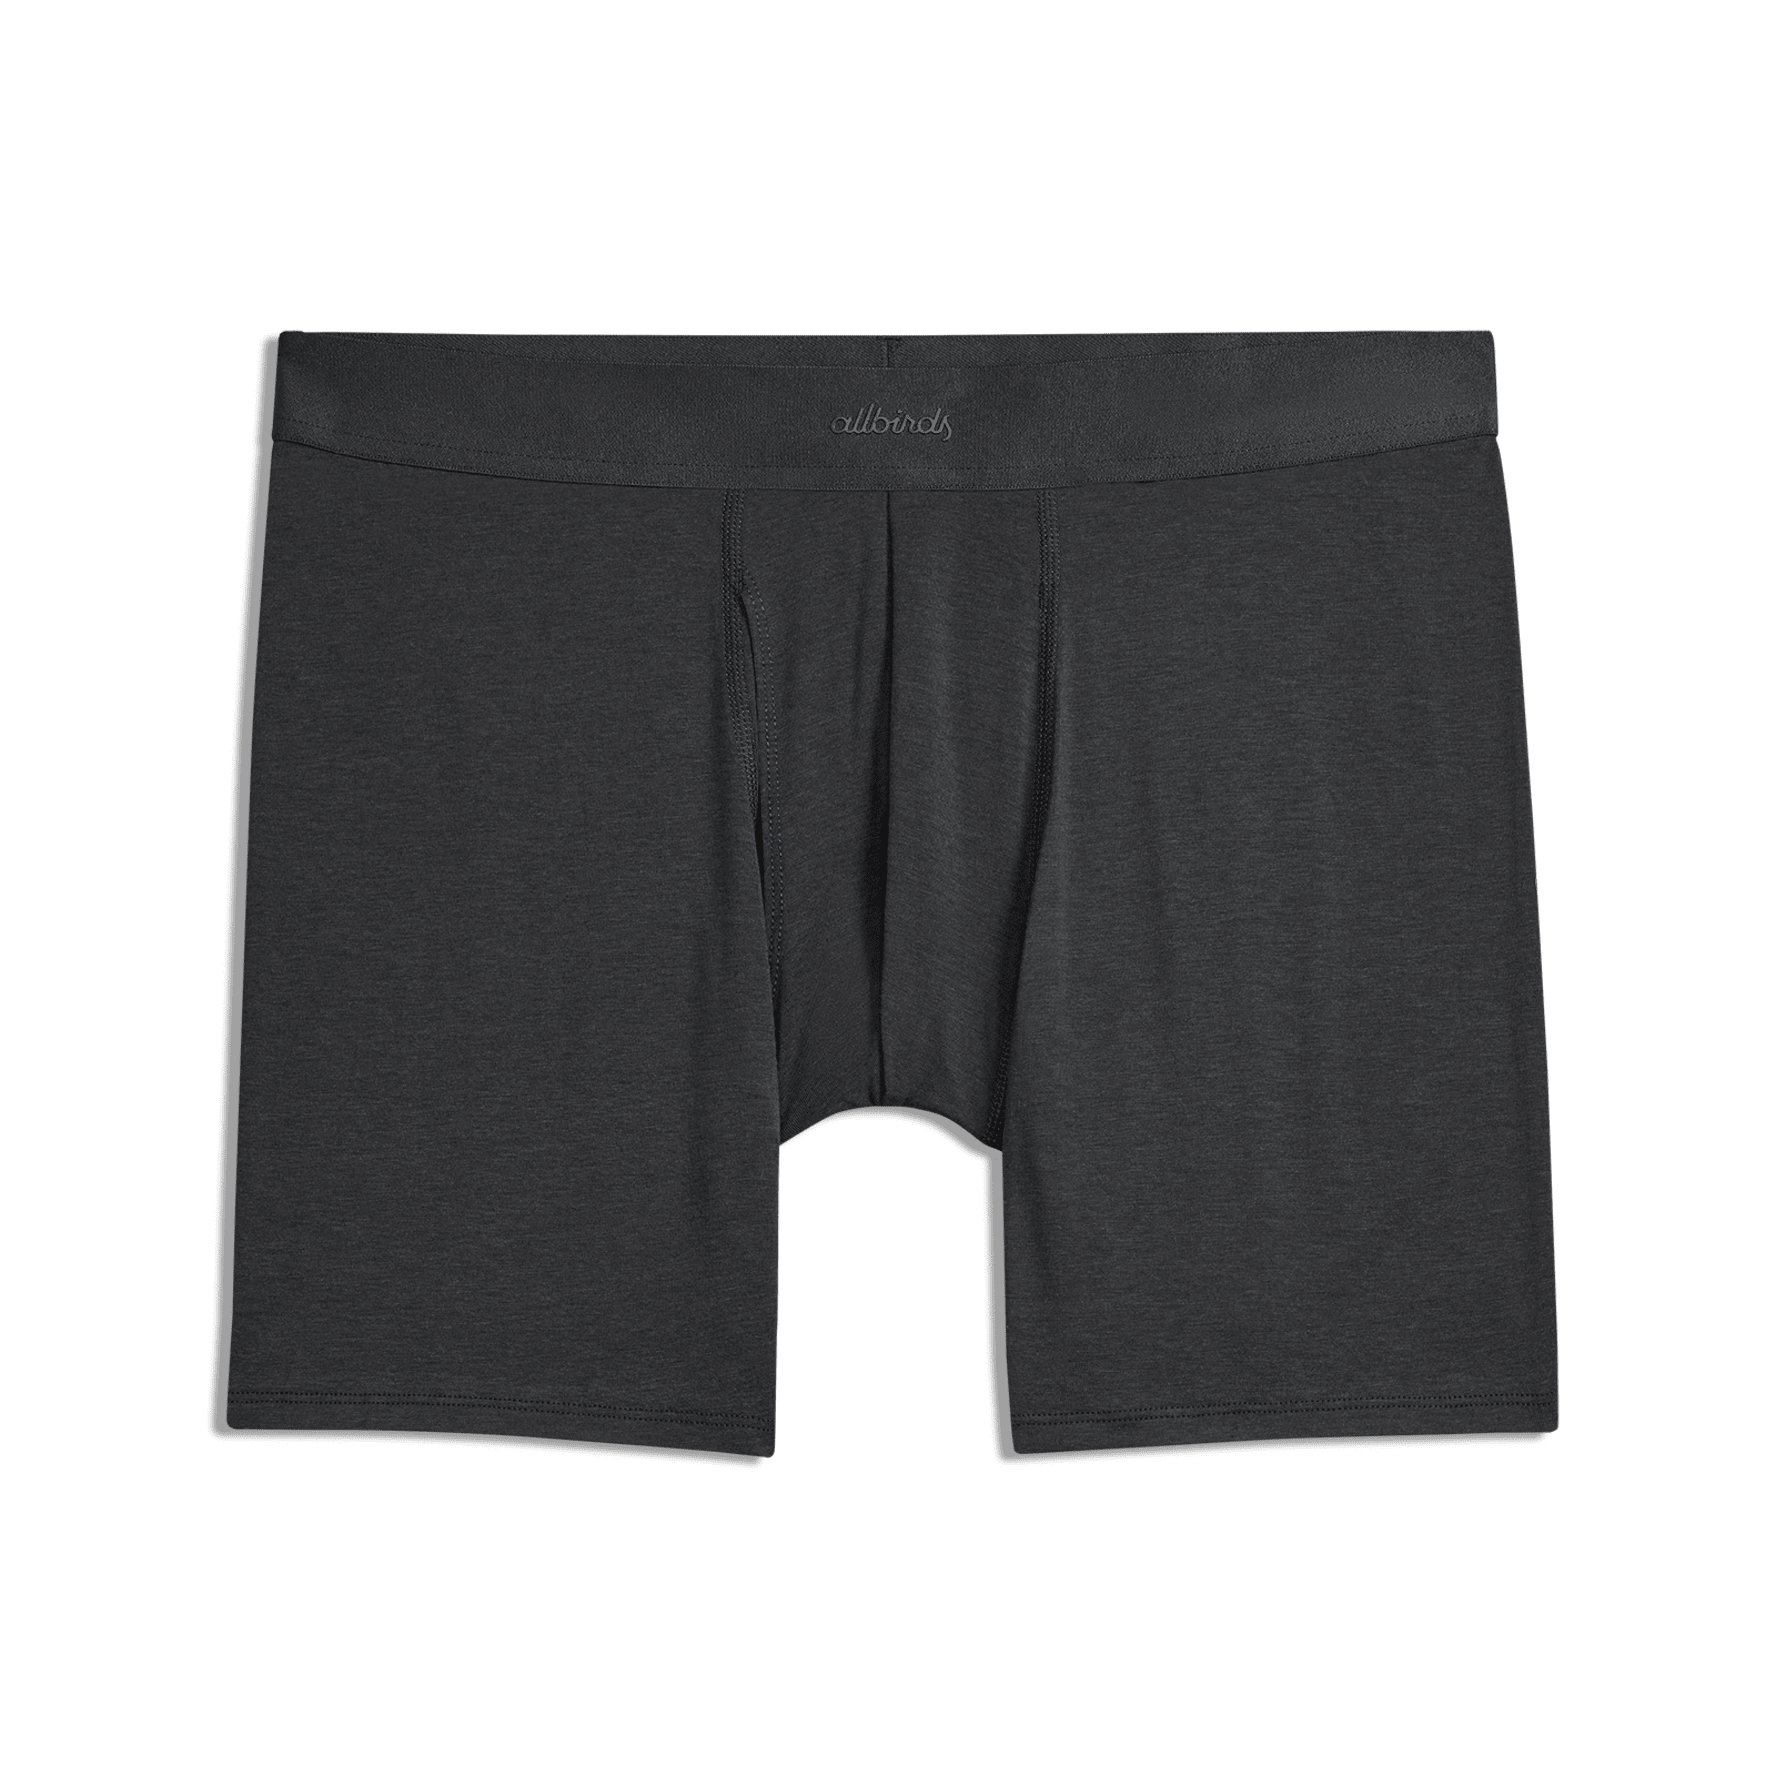 Boxer Brief - Tin Cans  Step One Men's Underwear